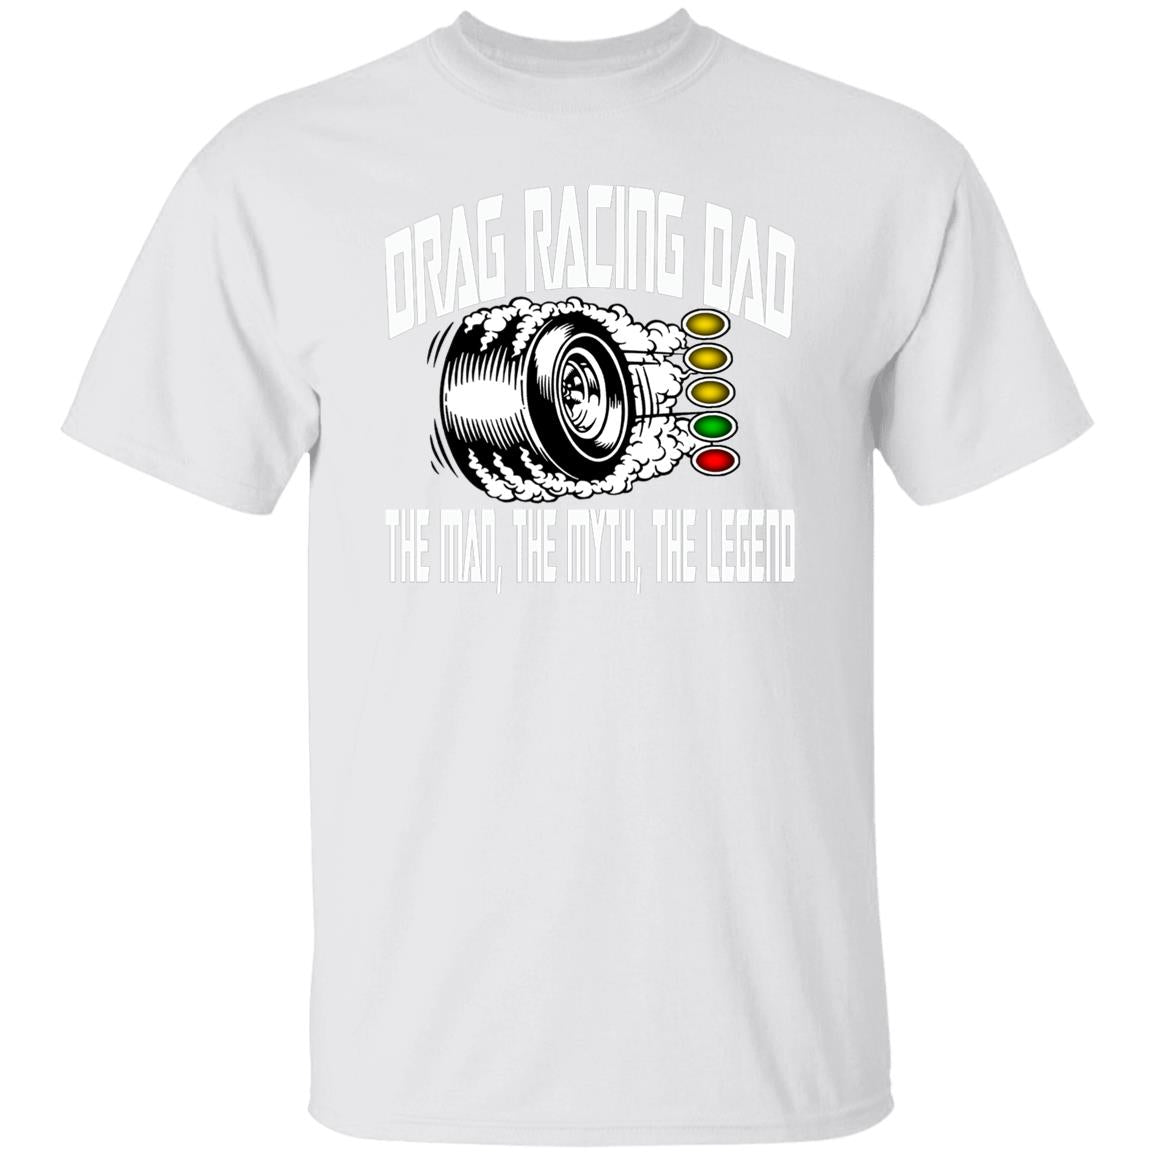 Drag Racing Dad 5.3 oz. T-Shirt